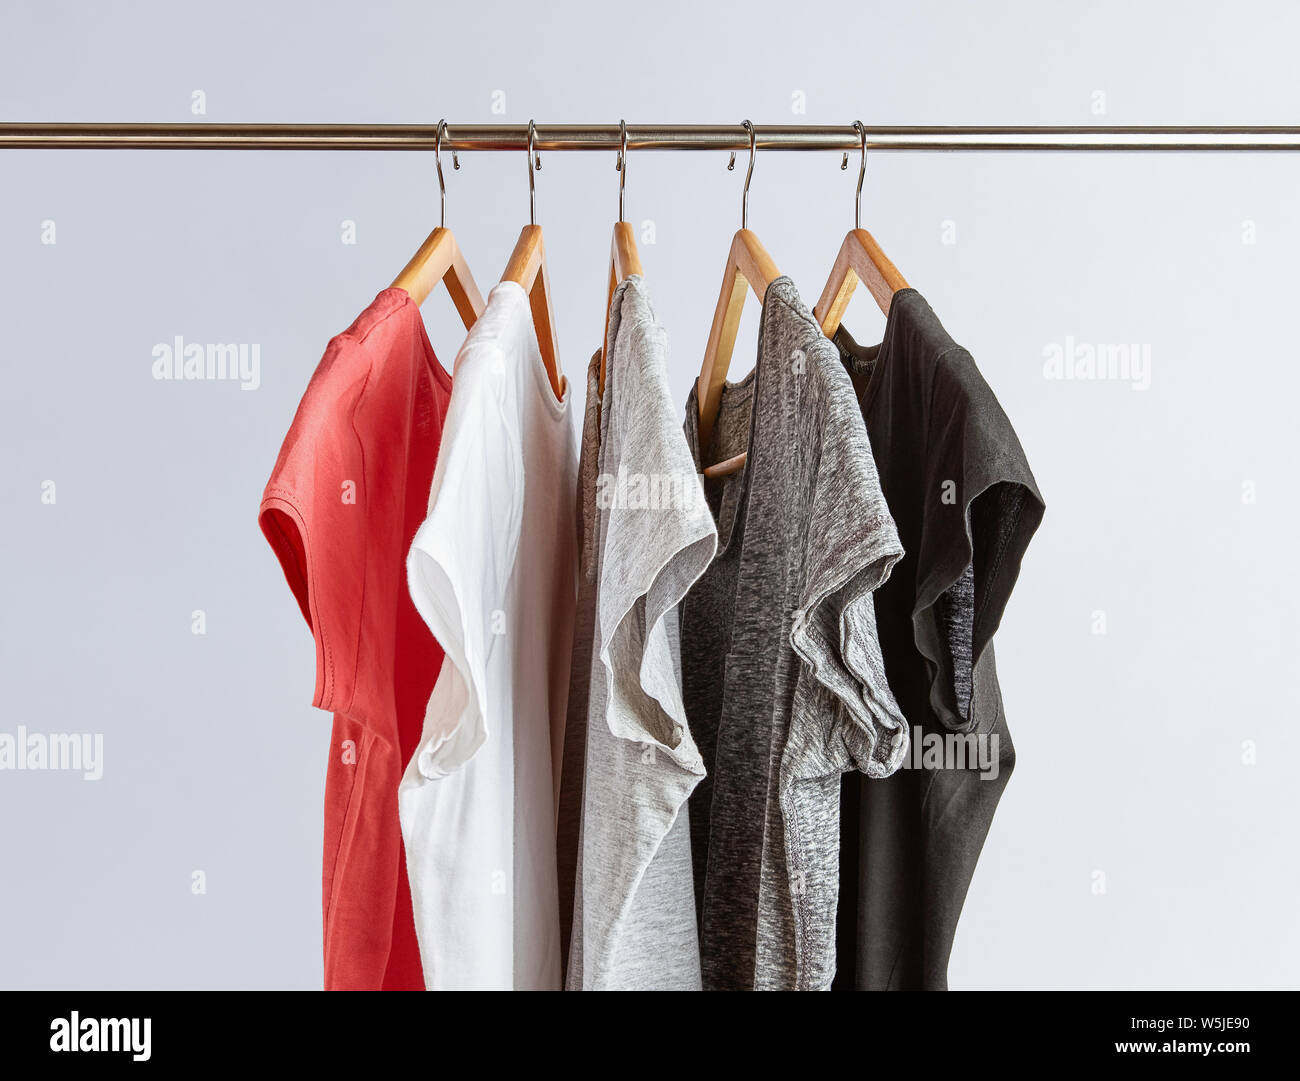 Capsula concetto guardaroba. T-shirt in tonalità di colori neutri e appeso su un rack di abbigliamento. Guardaroba minimalista. Foto Stock